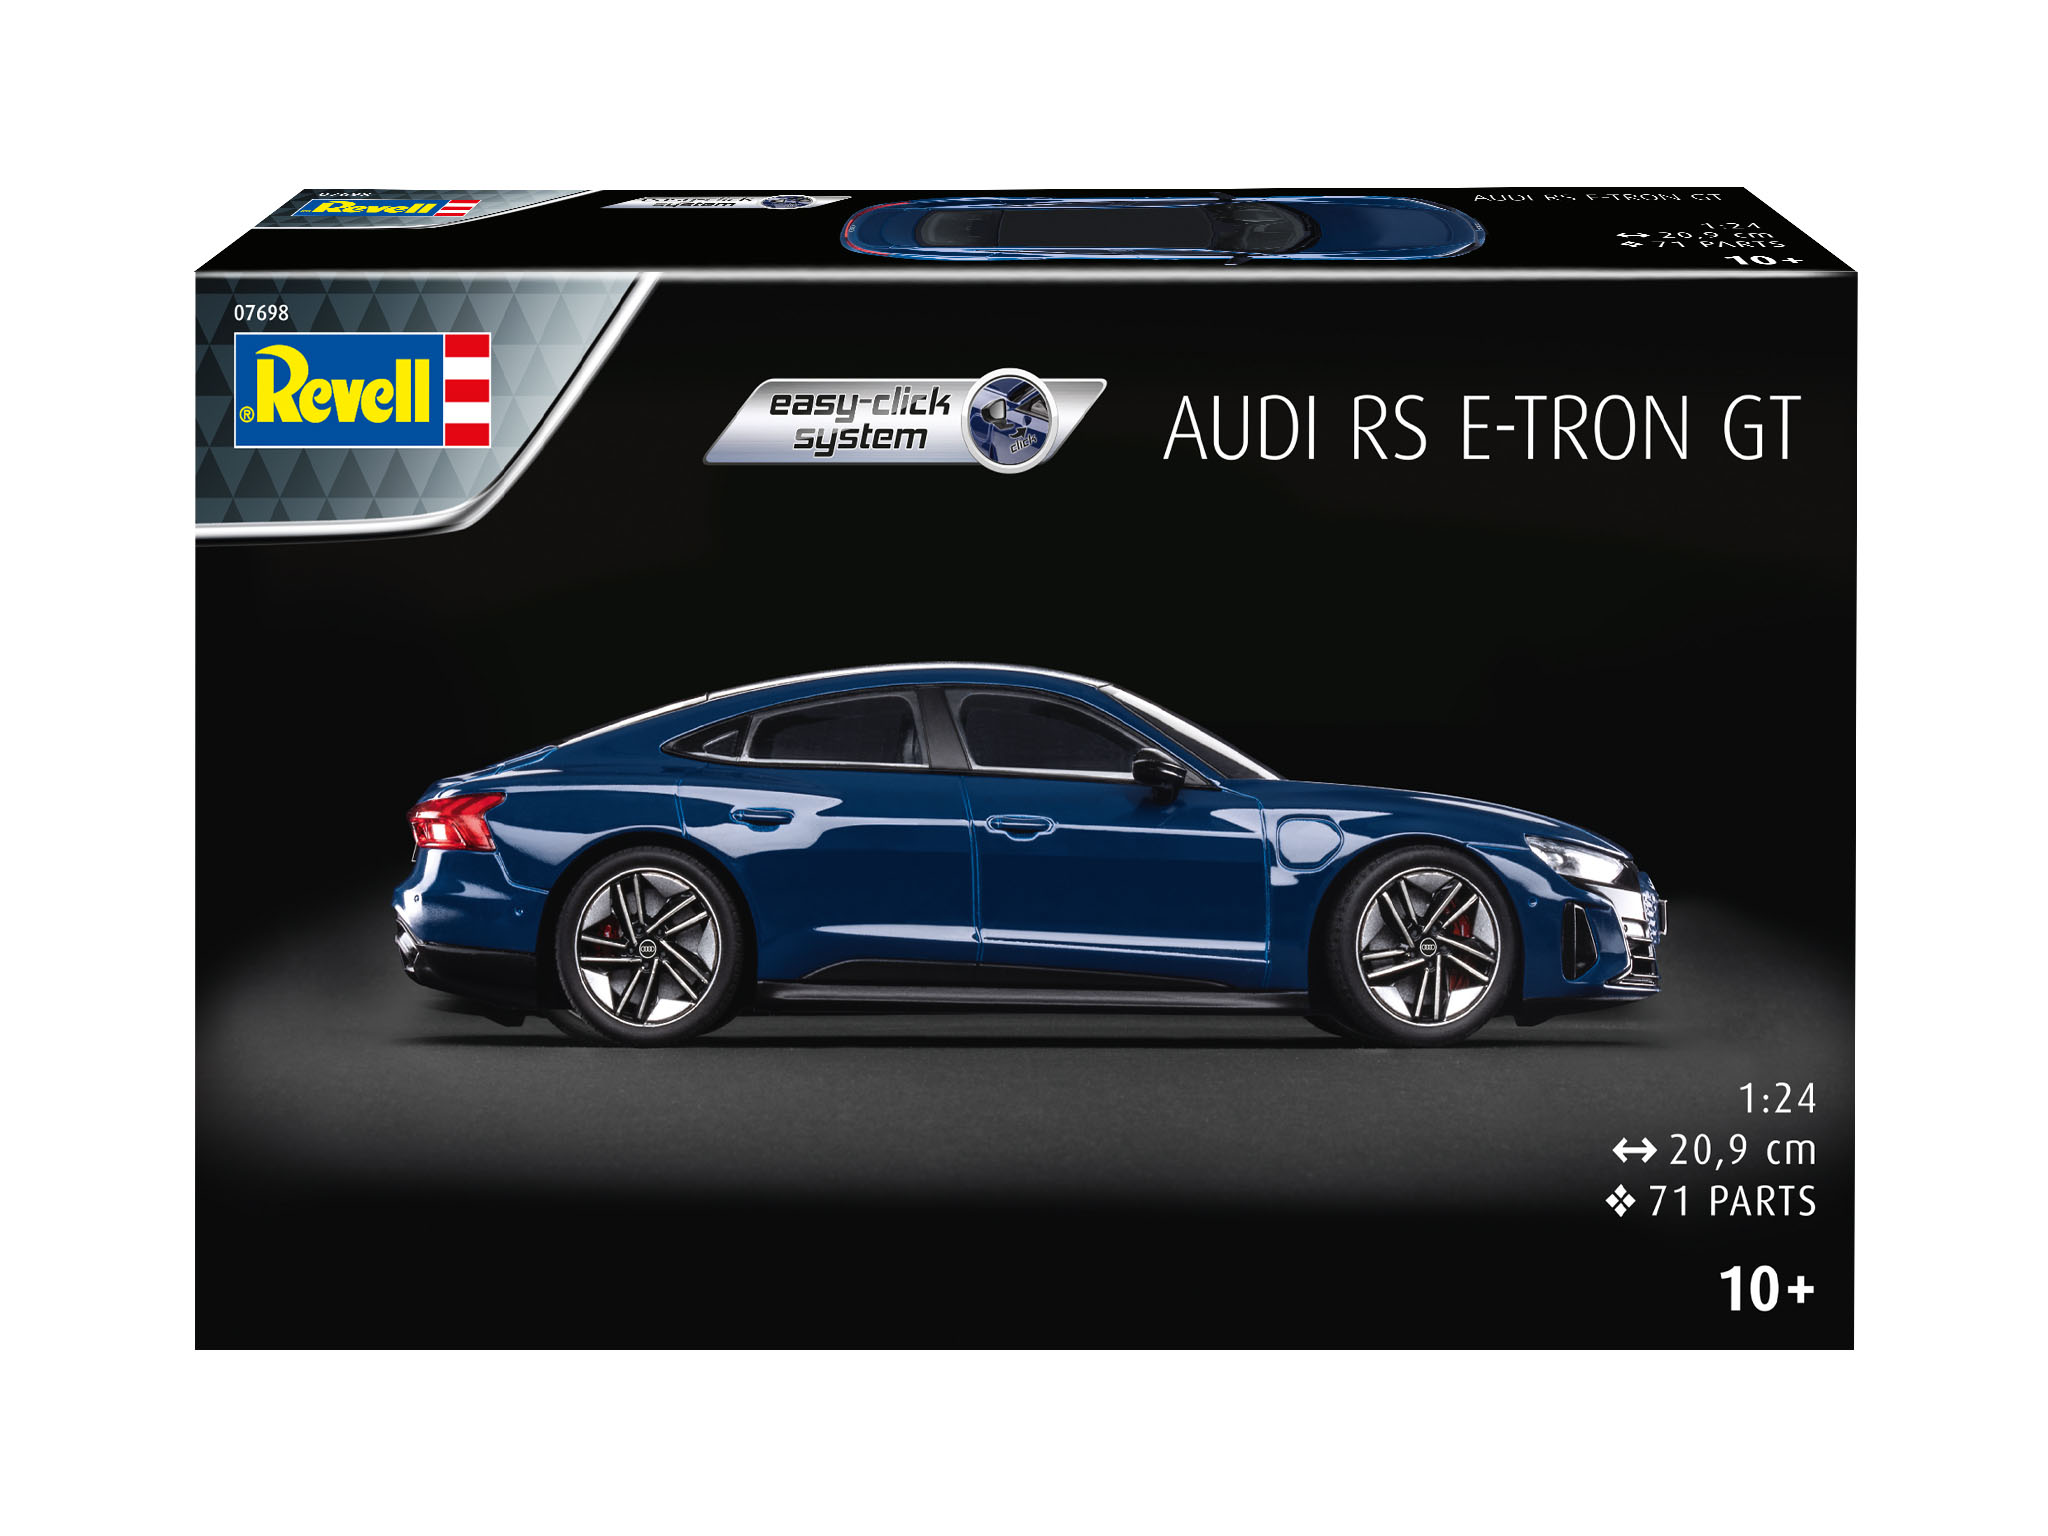 Audi e-tron GT easy-click-sy - 07698